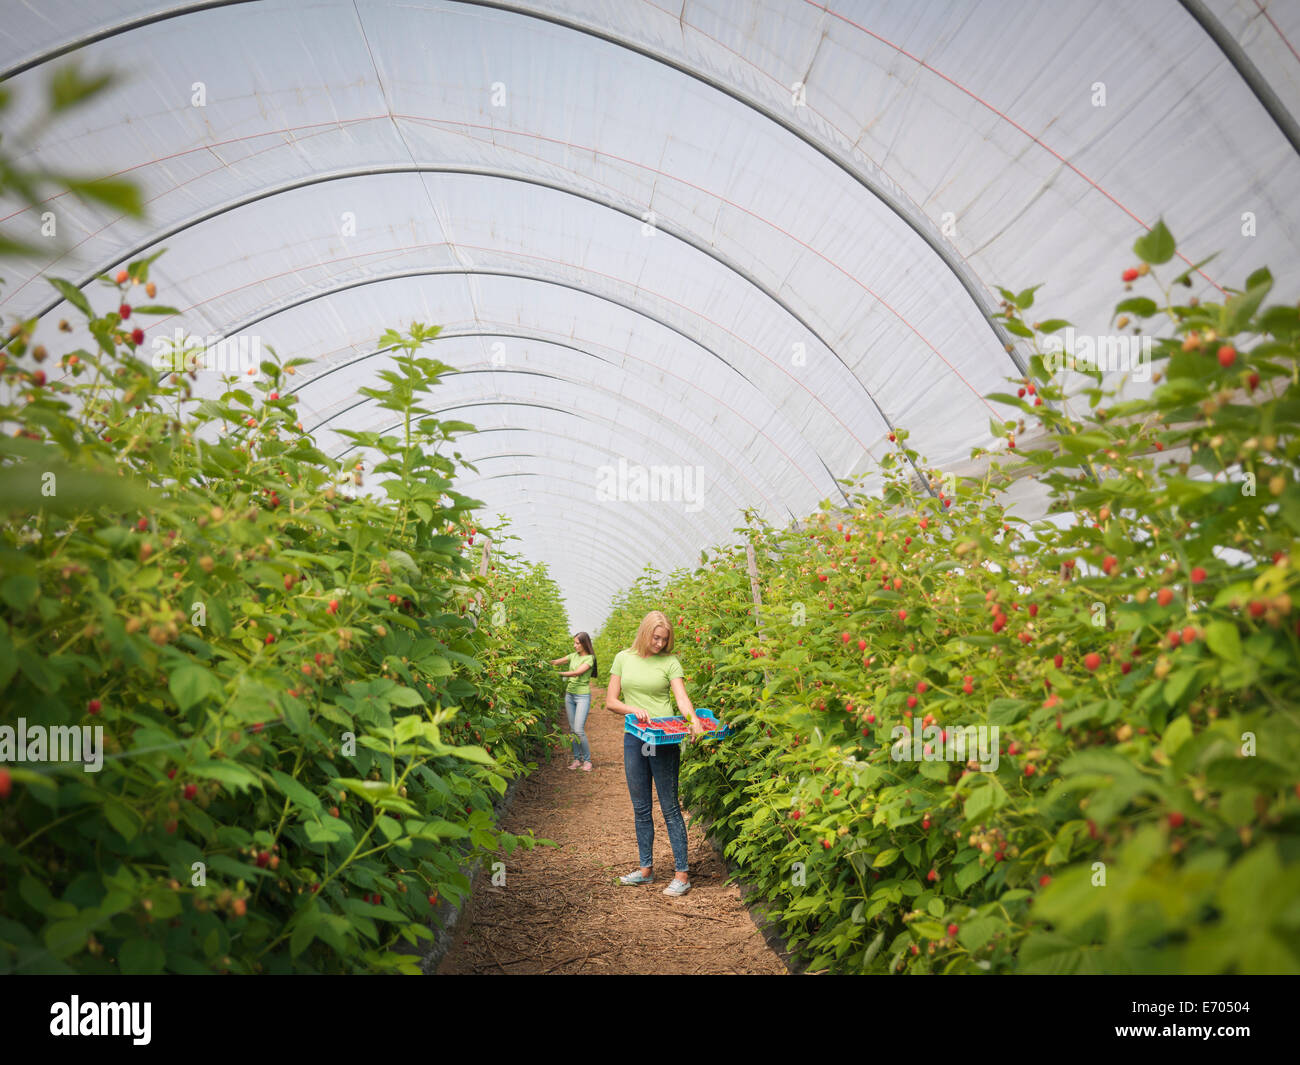 Los trabajadores que se encargan de recoger frambuesas en granja de frutas Foto de stock